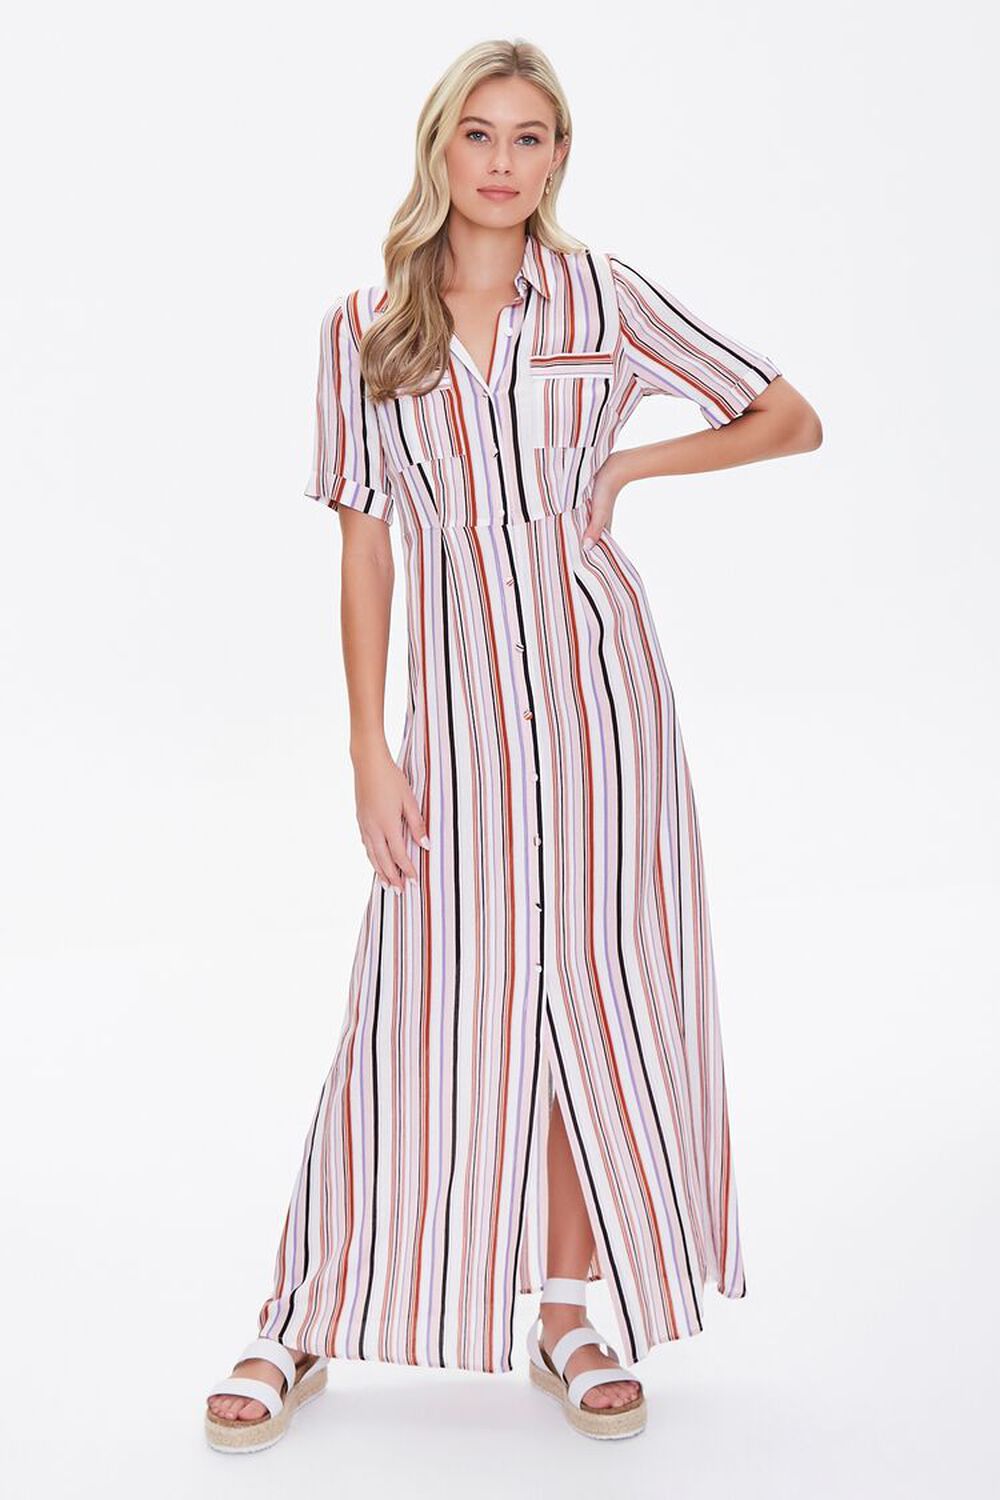 BLUSH/MULTI Multicolor Striped Dress, image 2